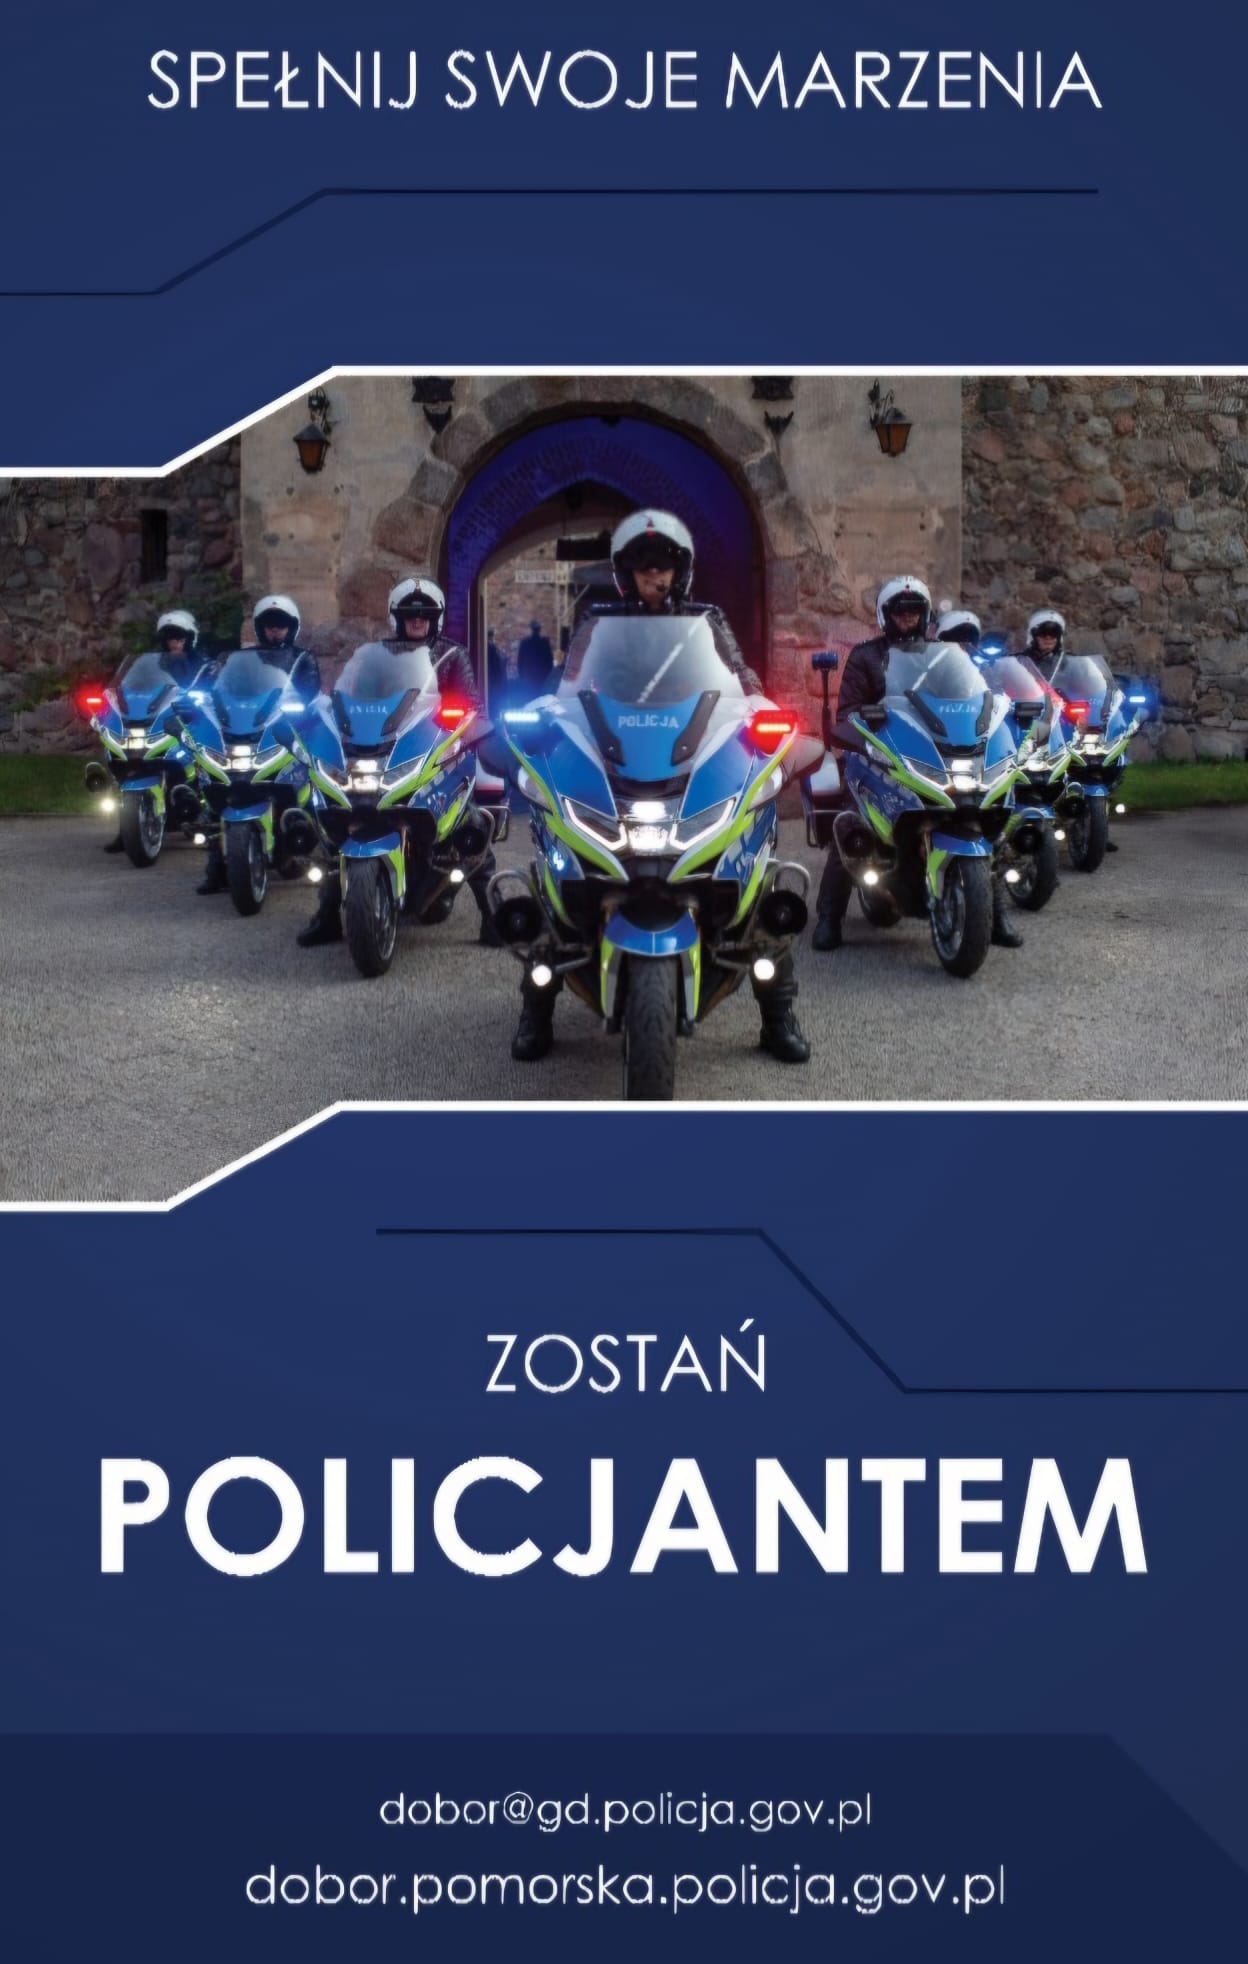 Plakat obrazujący policjantów na motorach